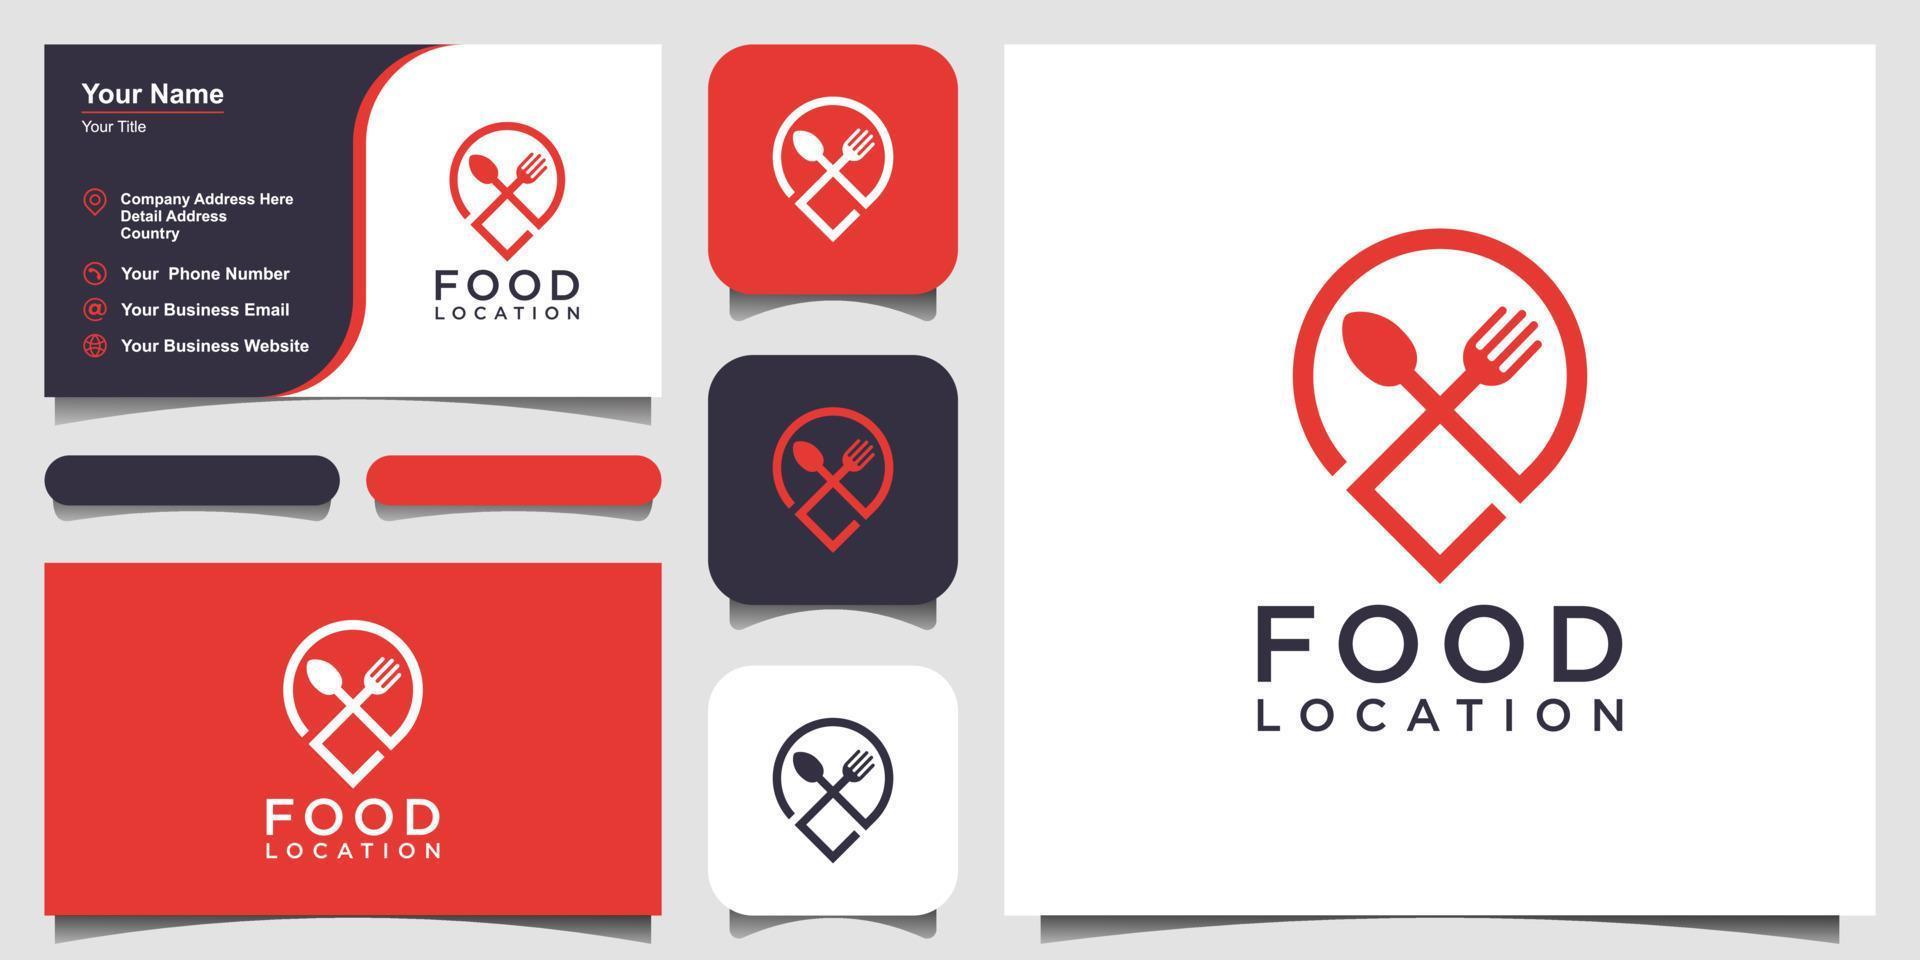 diseño del logotipo de la ubicación de la comida, con el concepto de un icono de alfiler combinado con un tenedor y una cuchara. diseño de tarjeta de visita vector